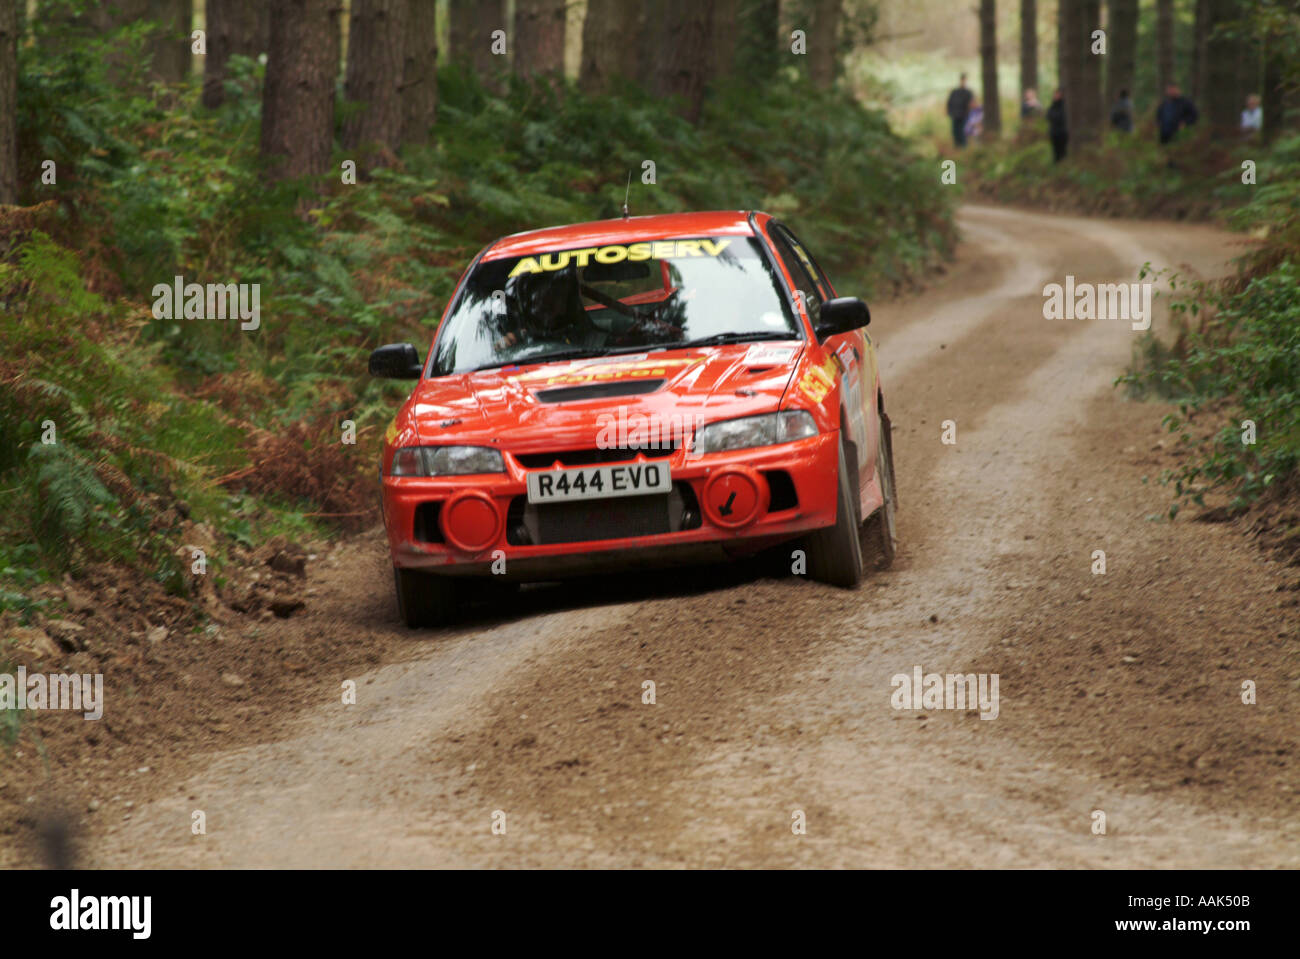 Mitsubishi Evo Evolution Rallye-Auto Rallye of Straße Geschwindigkeit schnell Schlamm Fahrer Sponsor Sponsoring männliche Interesse Dalby Forest in noch Stockfoto